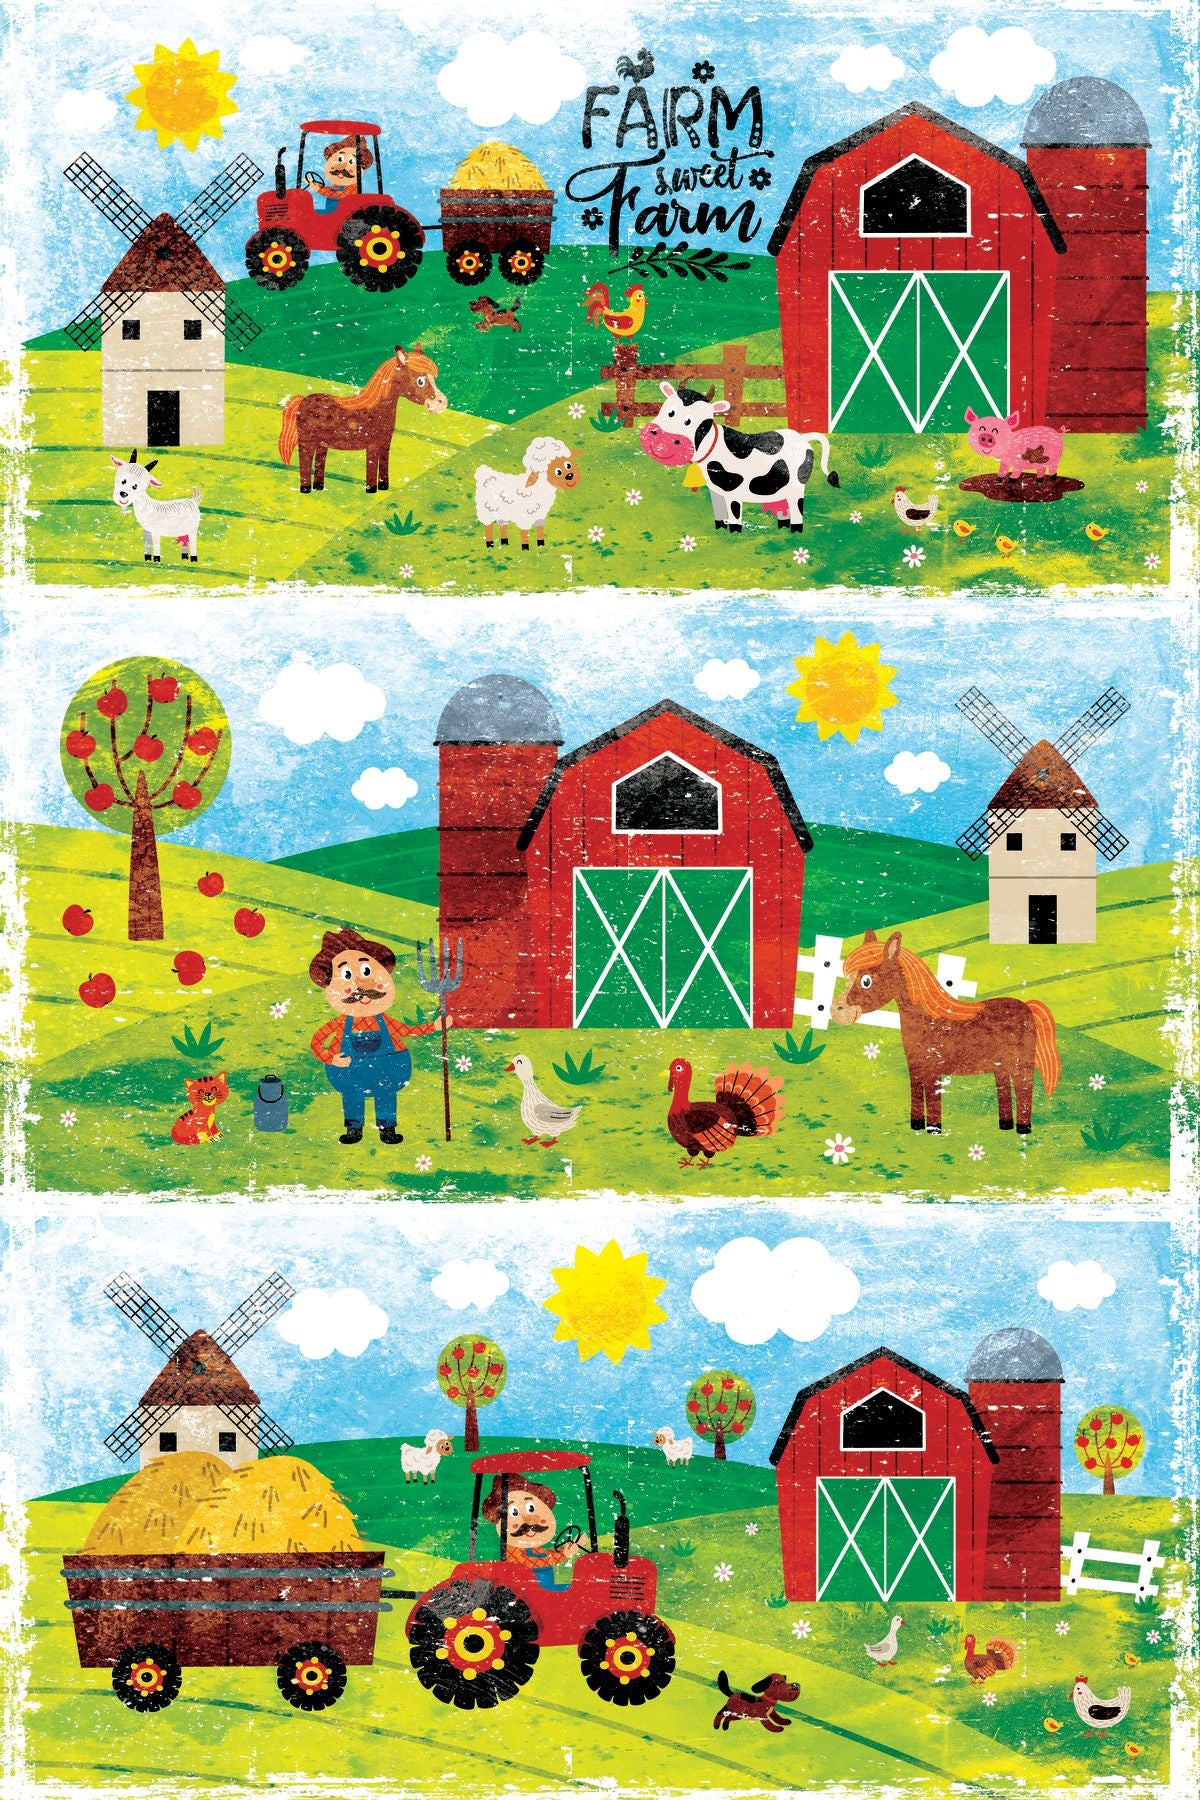 Farm Sweet Farm Poster